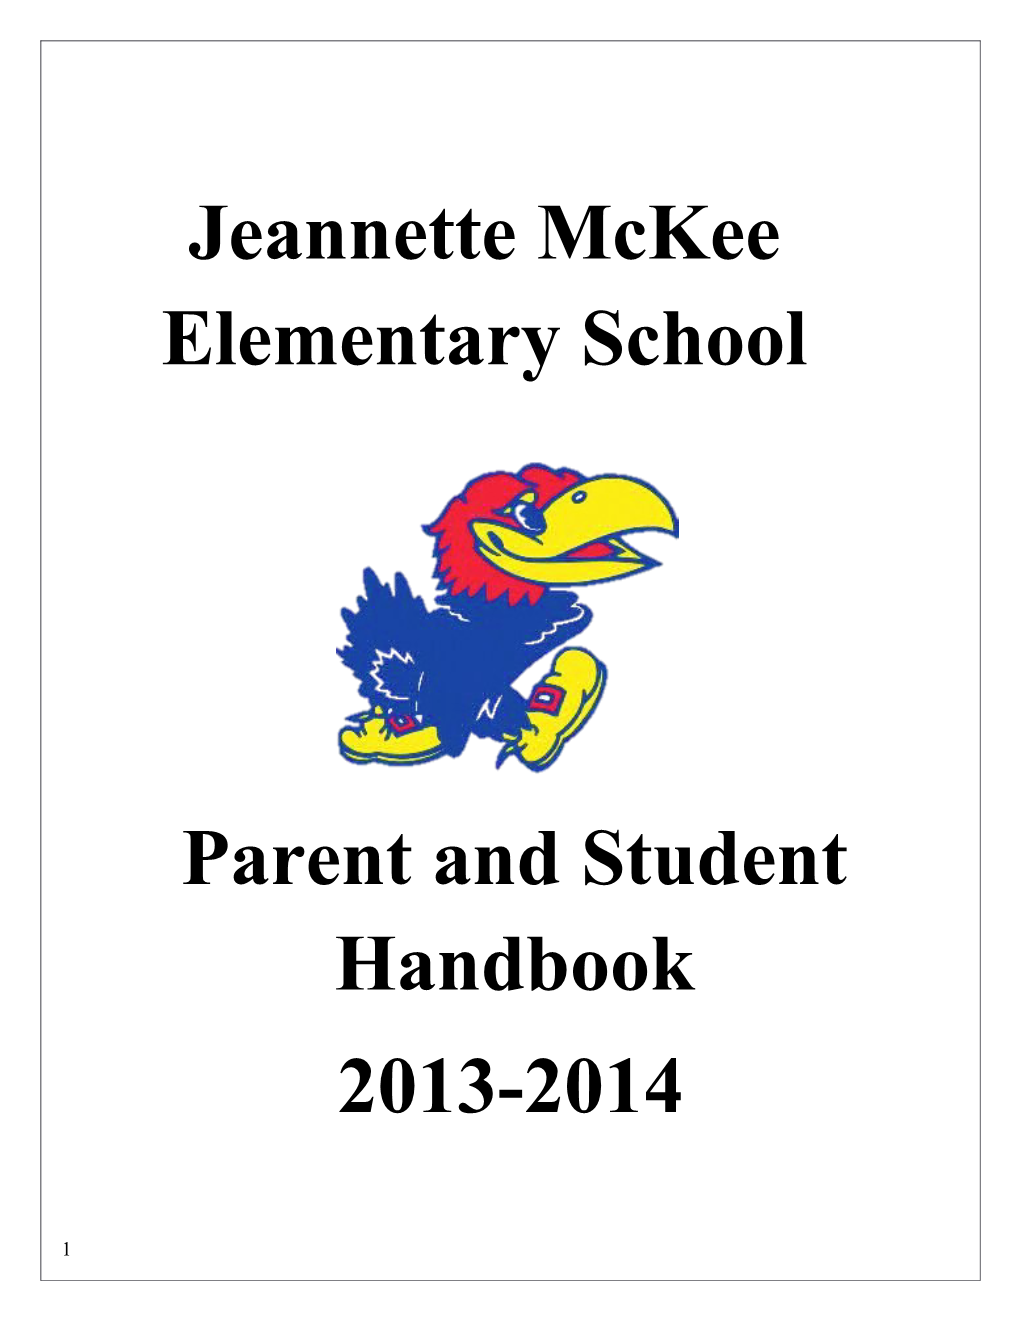 Jeannette Mckee Elementary School